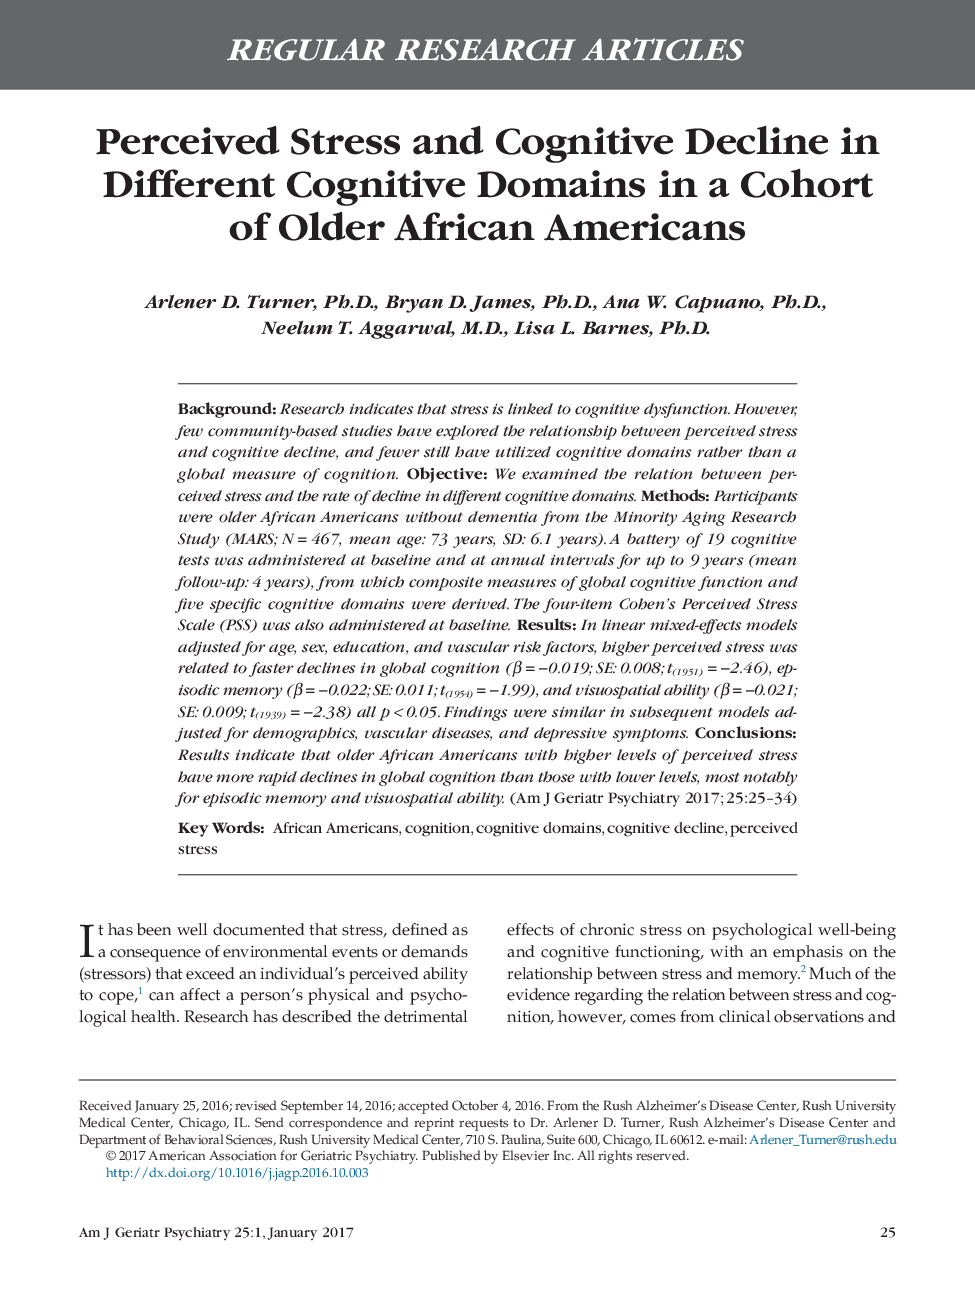 مقالات پژوهشی منظم مقابله با استرس و کاهش شناختی در حوزه های شناختی مختلف در یک گروه از آمریکایی های آفریقایی قدیمی تر 